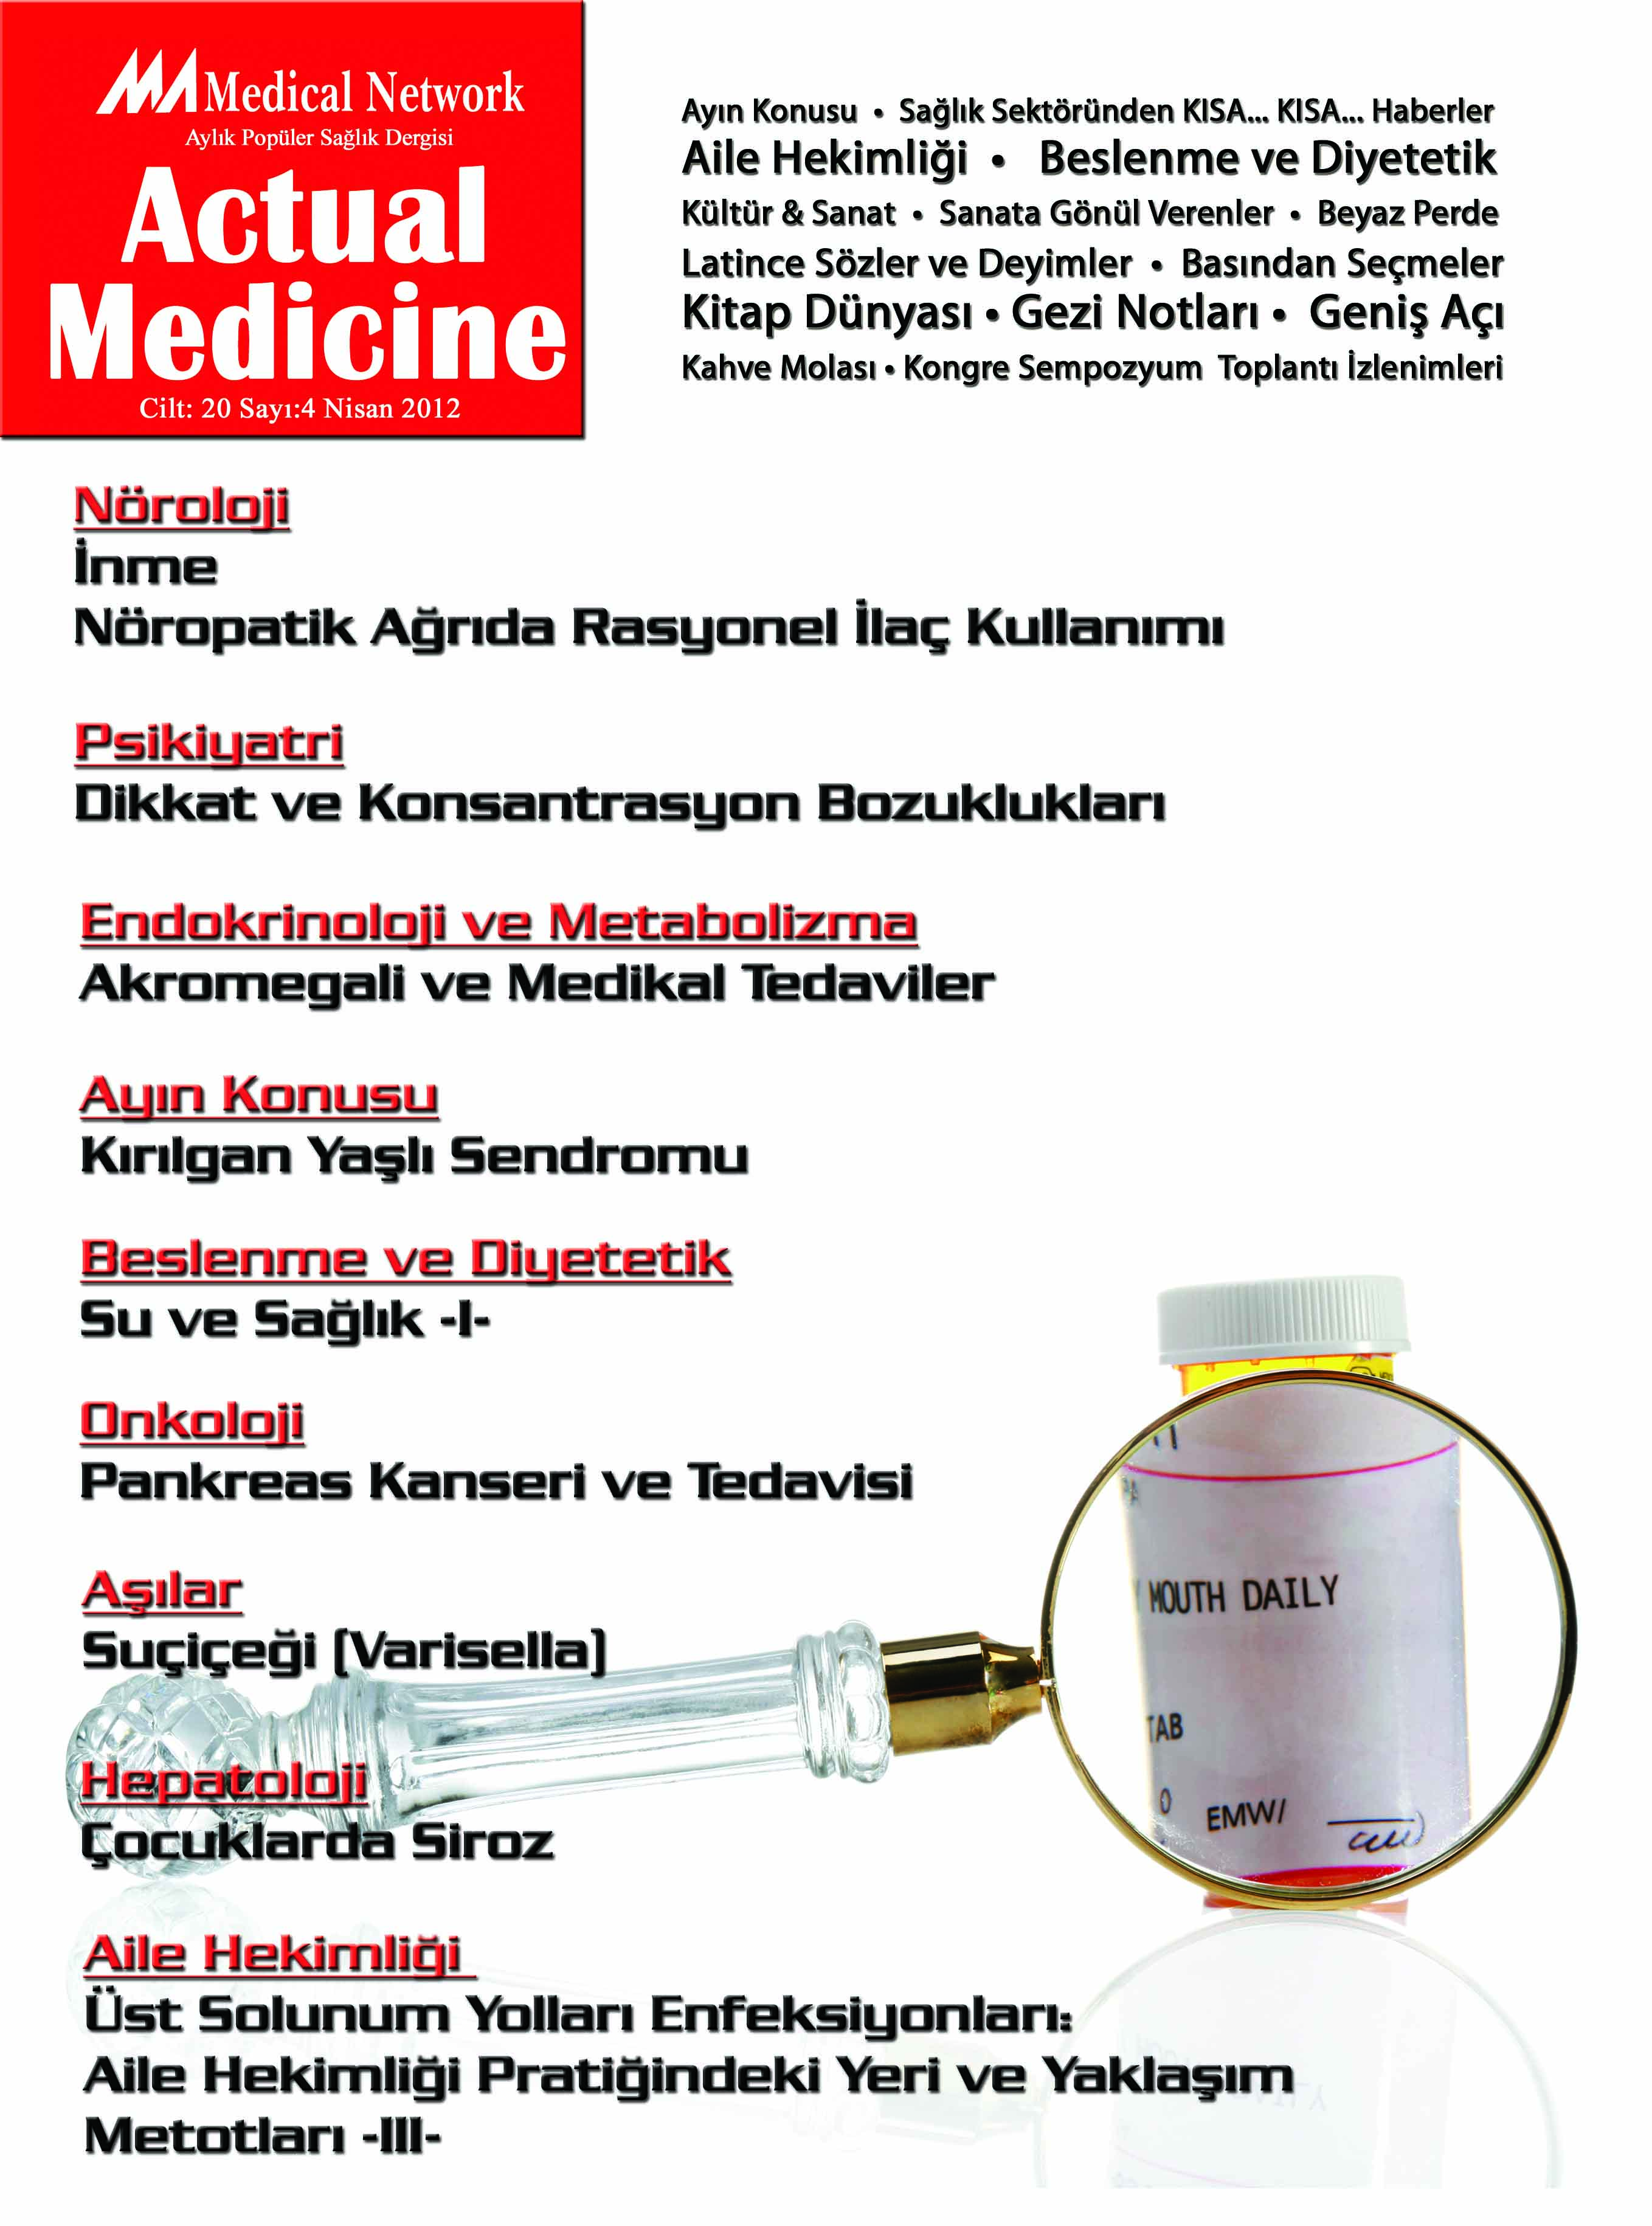 <p>Actual Medicine Cilt: 20 Sayı: 4 2012</p>